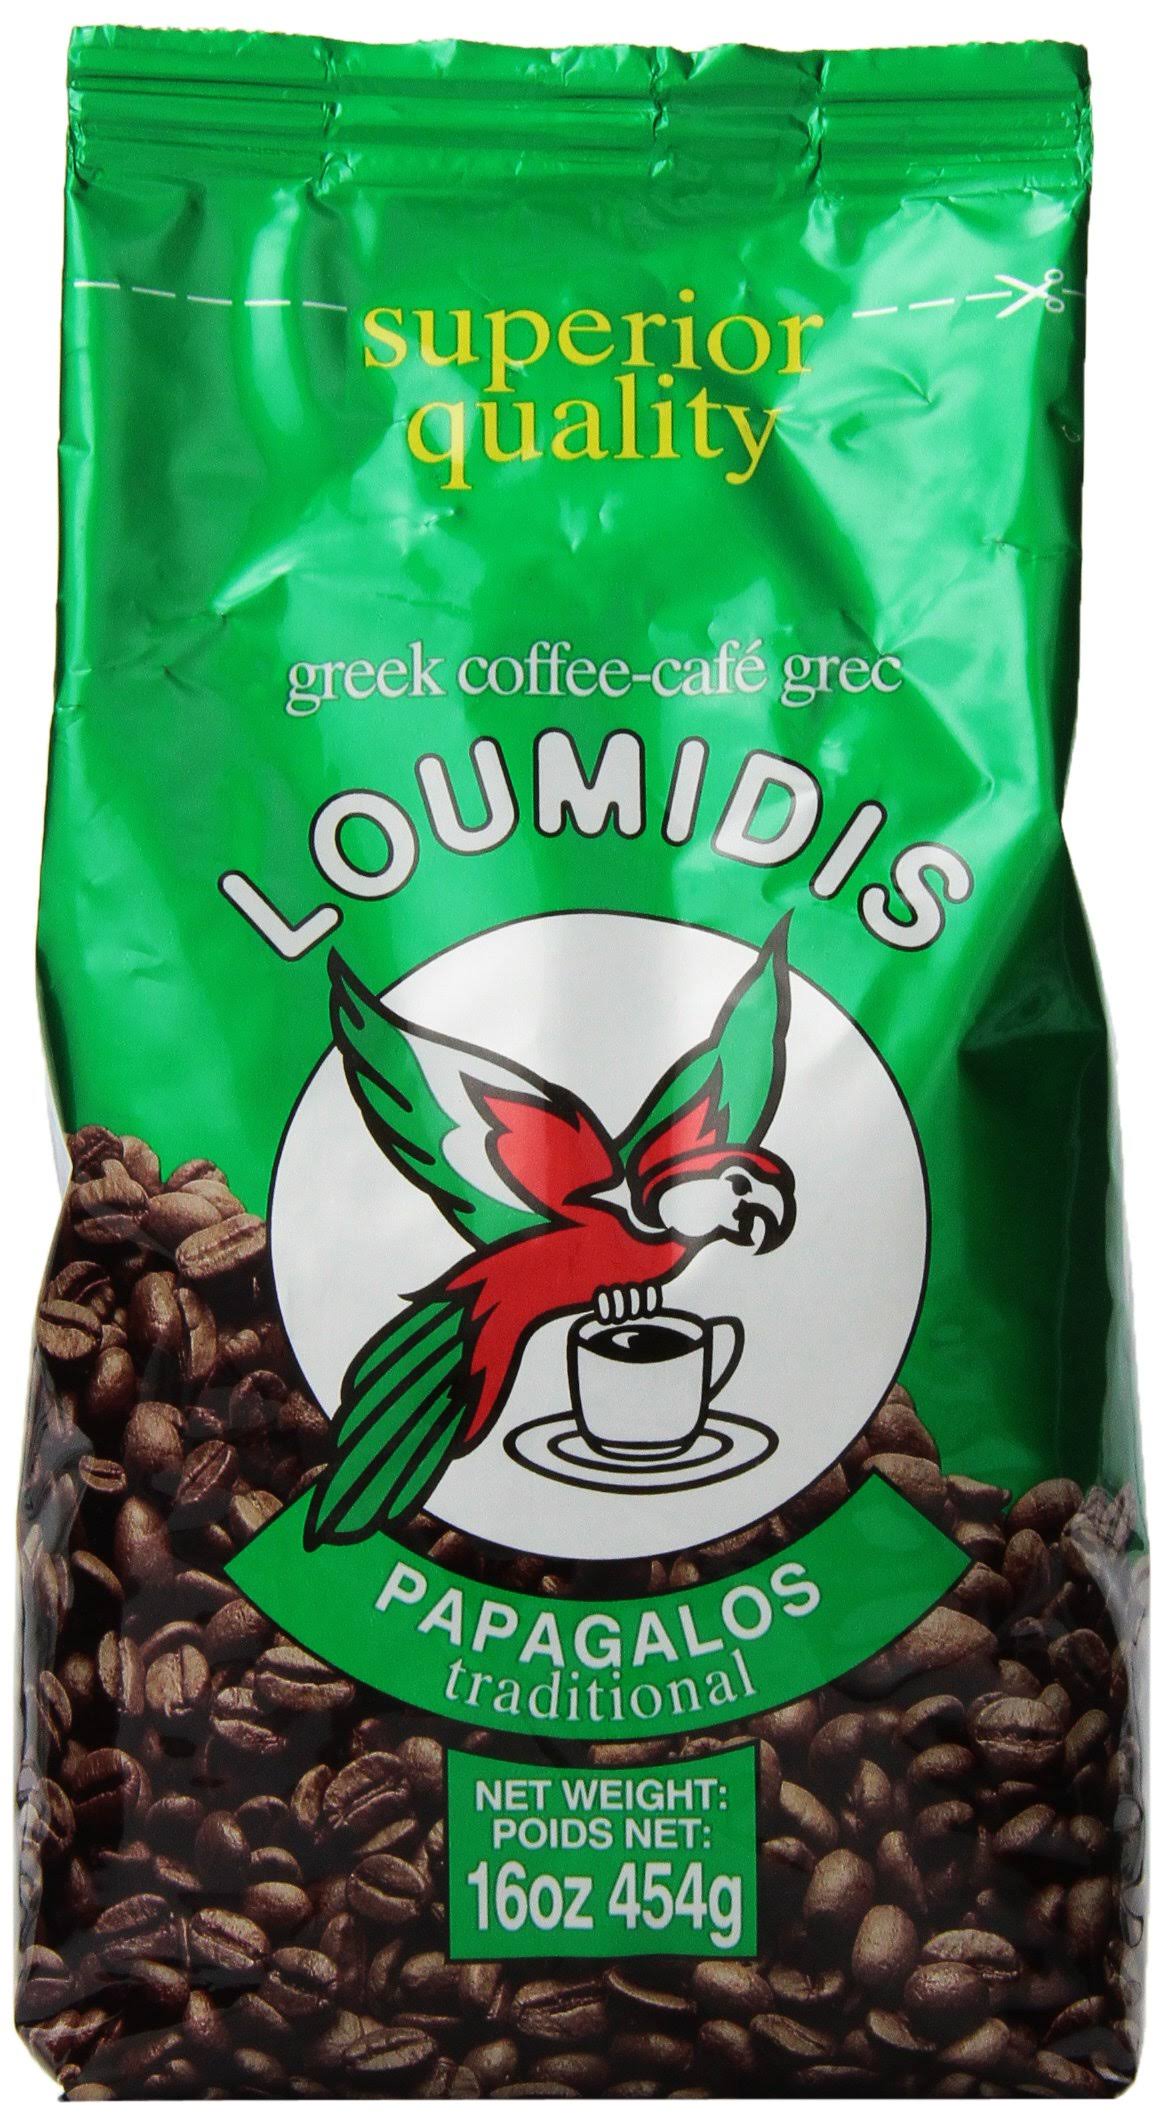 Loumidis Papagalos Traditional Greek Coffee - 16oz